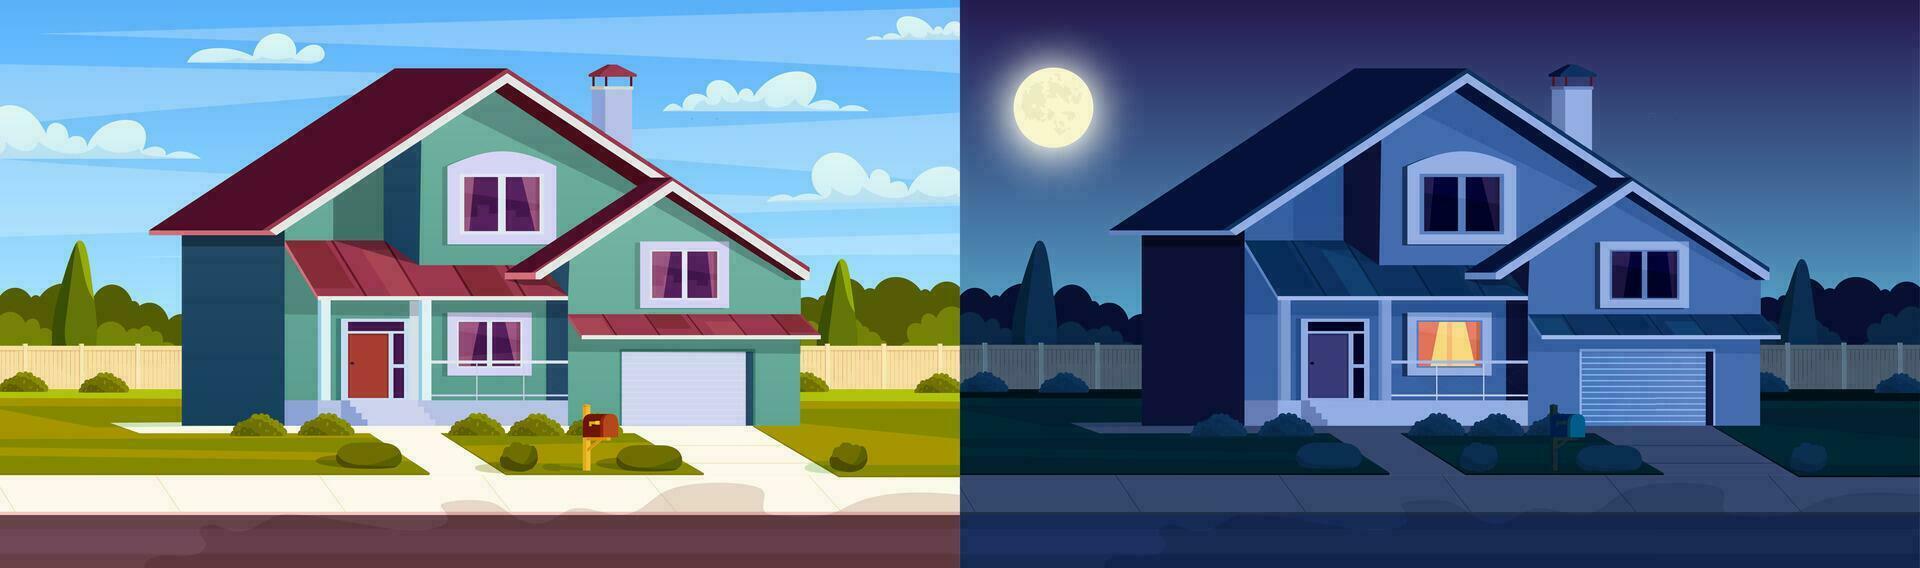 dag en nacht huis. straat in voorstad wijk met woon- huis. tekenfilm landschap met buitenwijk huisje. stad buurt met echt landgoed eigendom. vector illustratie in een vlak stijl